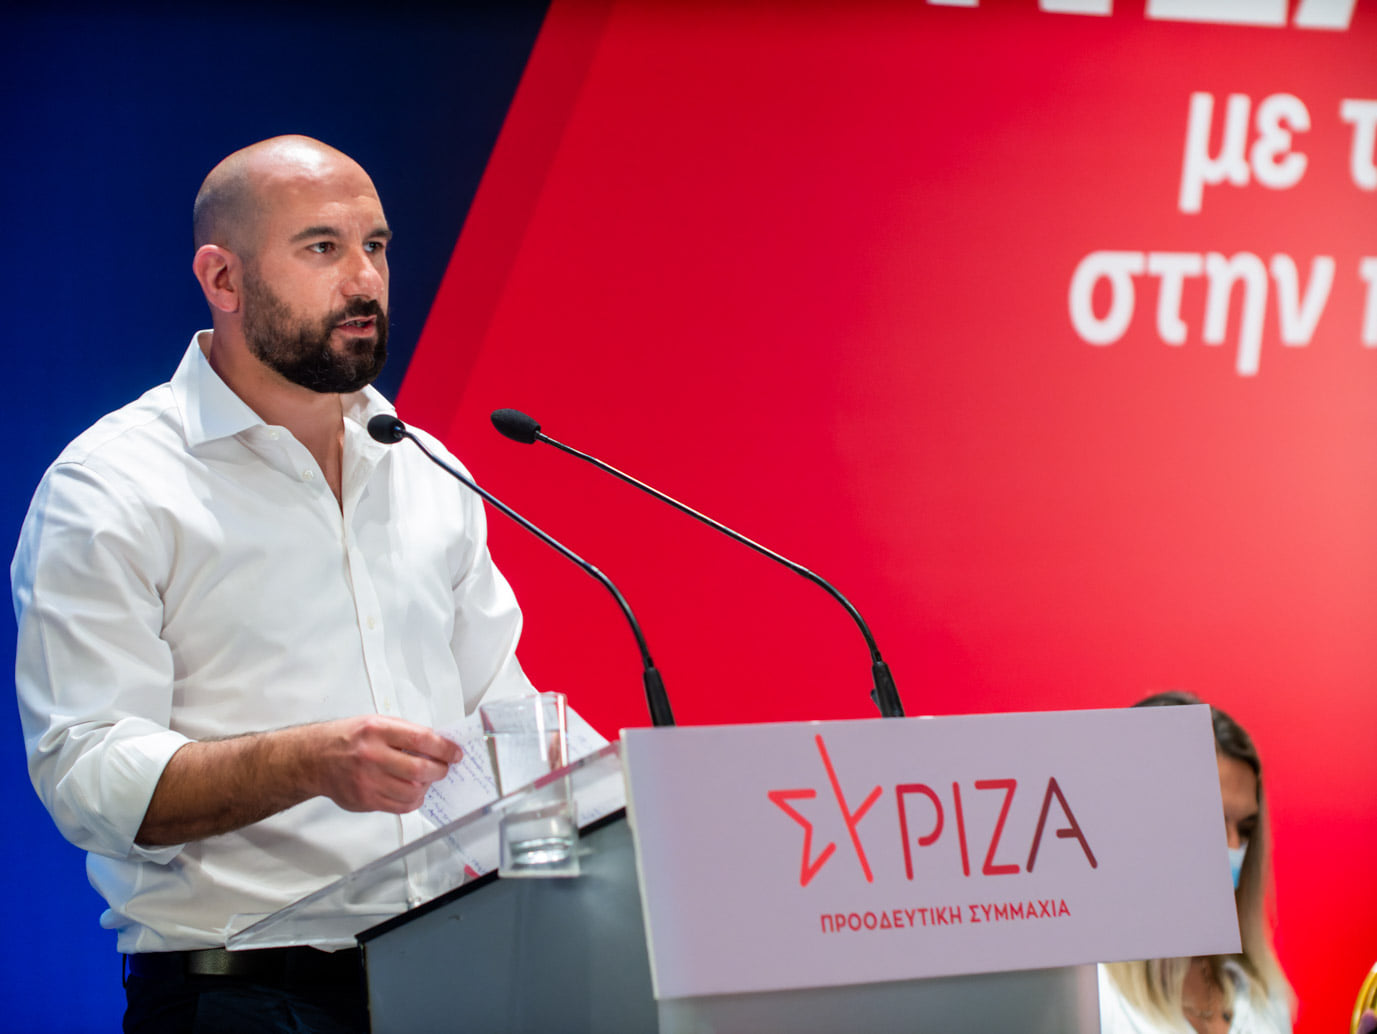 Δ. Τζανακόπουλος: Ο κ. Μητσοτάκης μέσα στις κρίσεις έχει κάνει πάρα πολλά, αλλά για τους πολύ λίγους